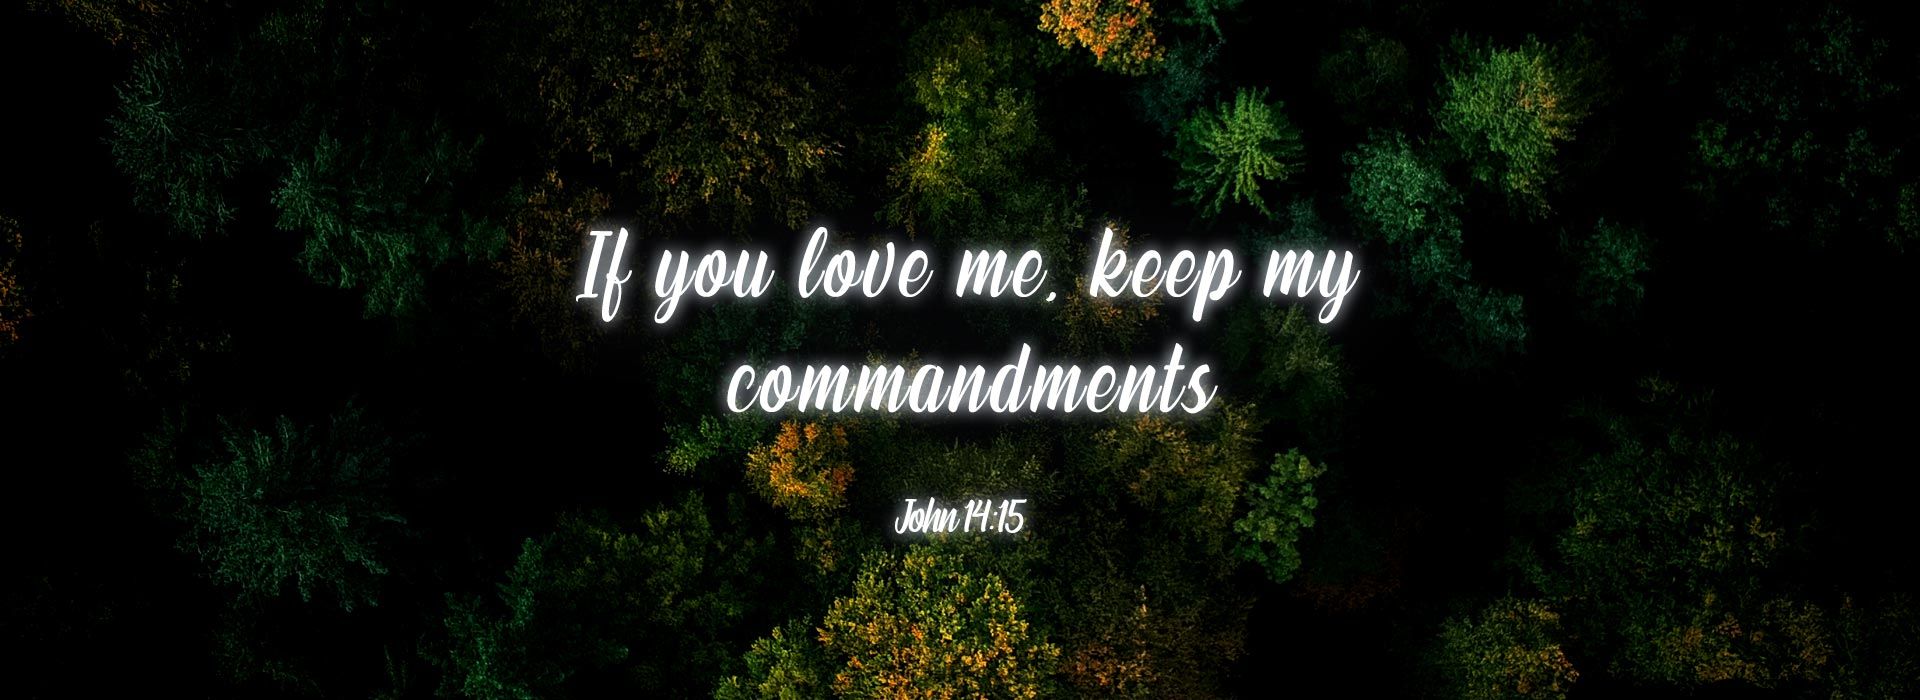 John14:15